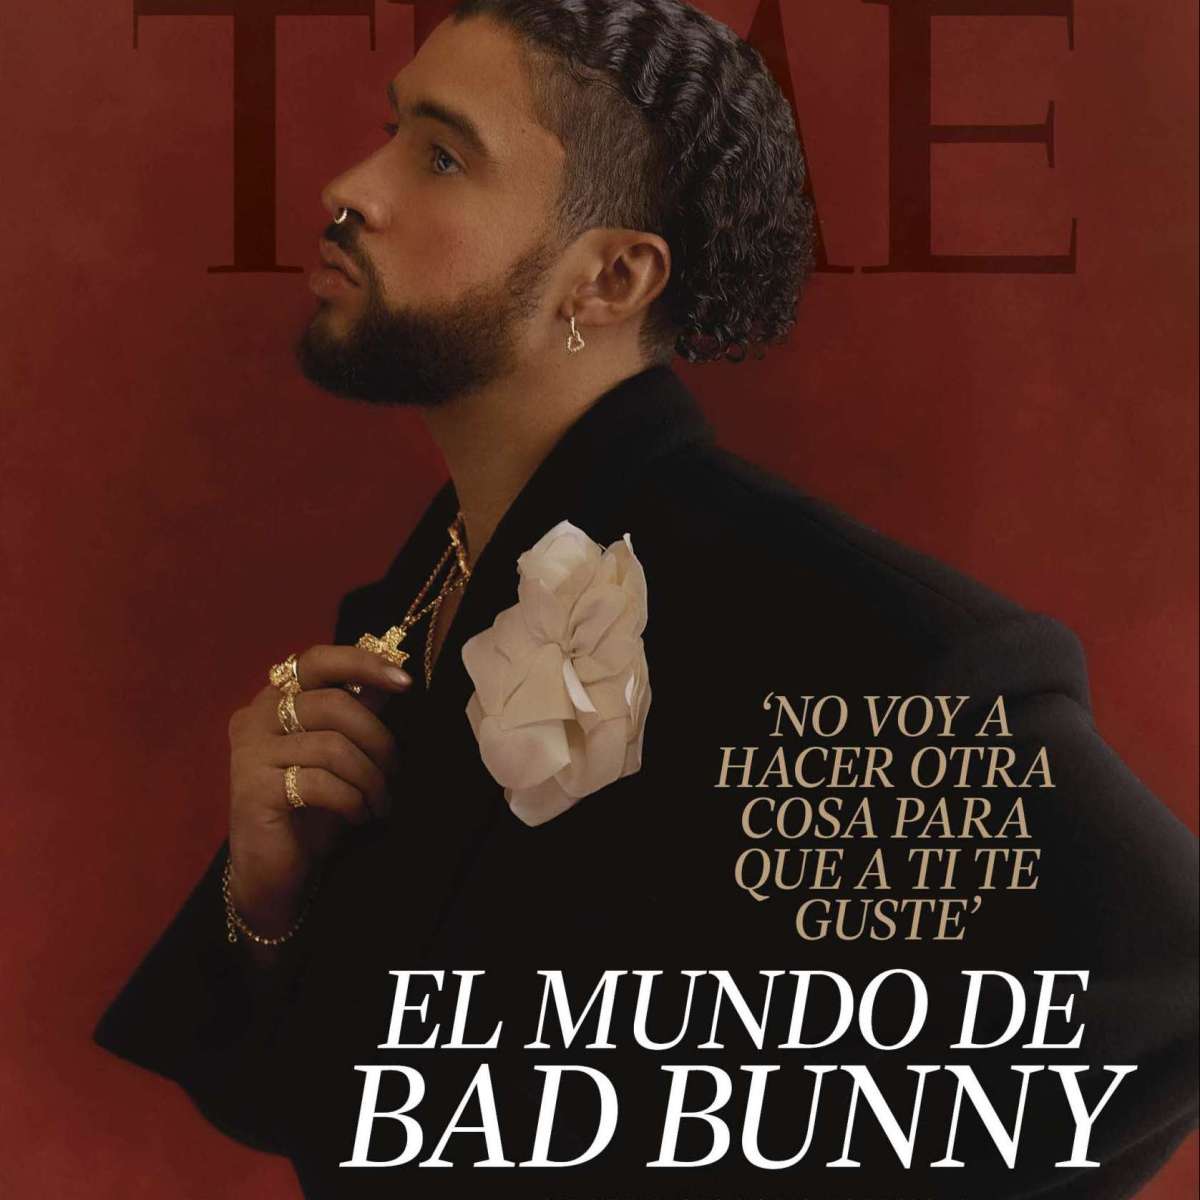 Portada de Time con Bad Bunny, la primera en español que saca la revista.